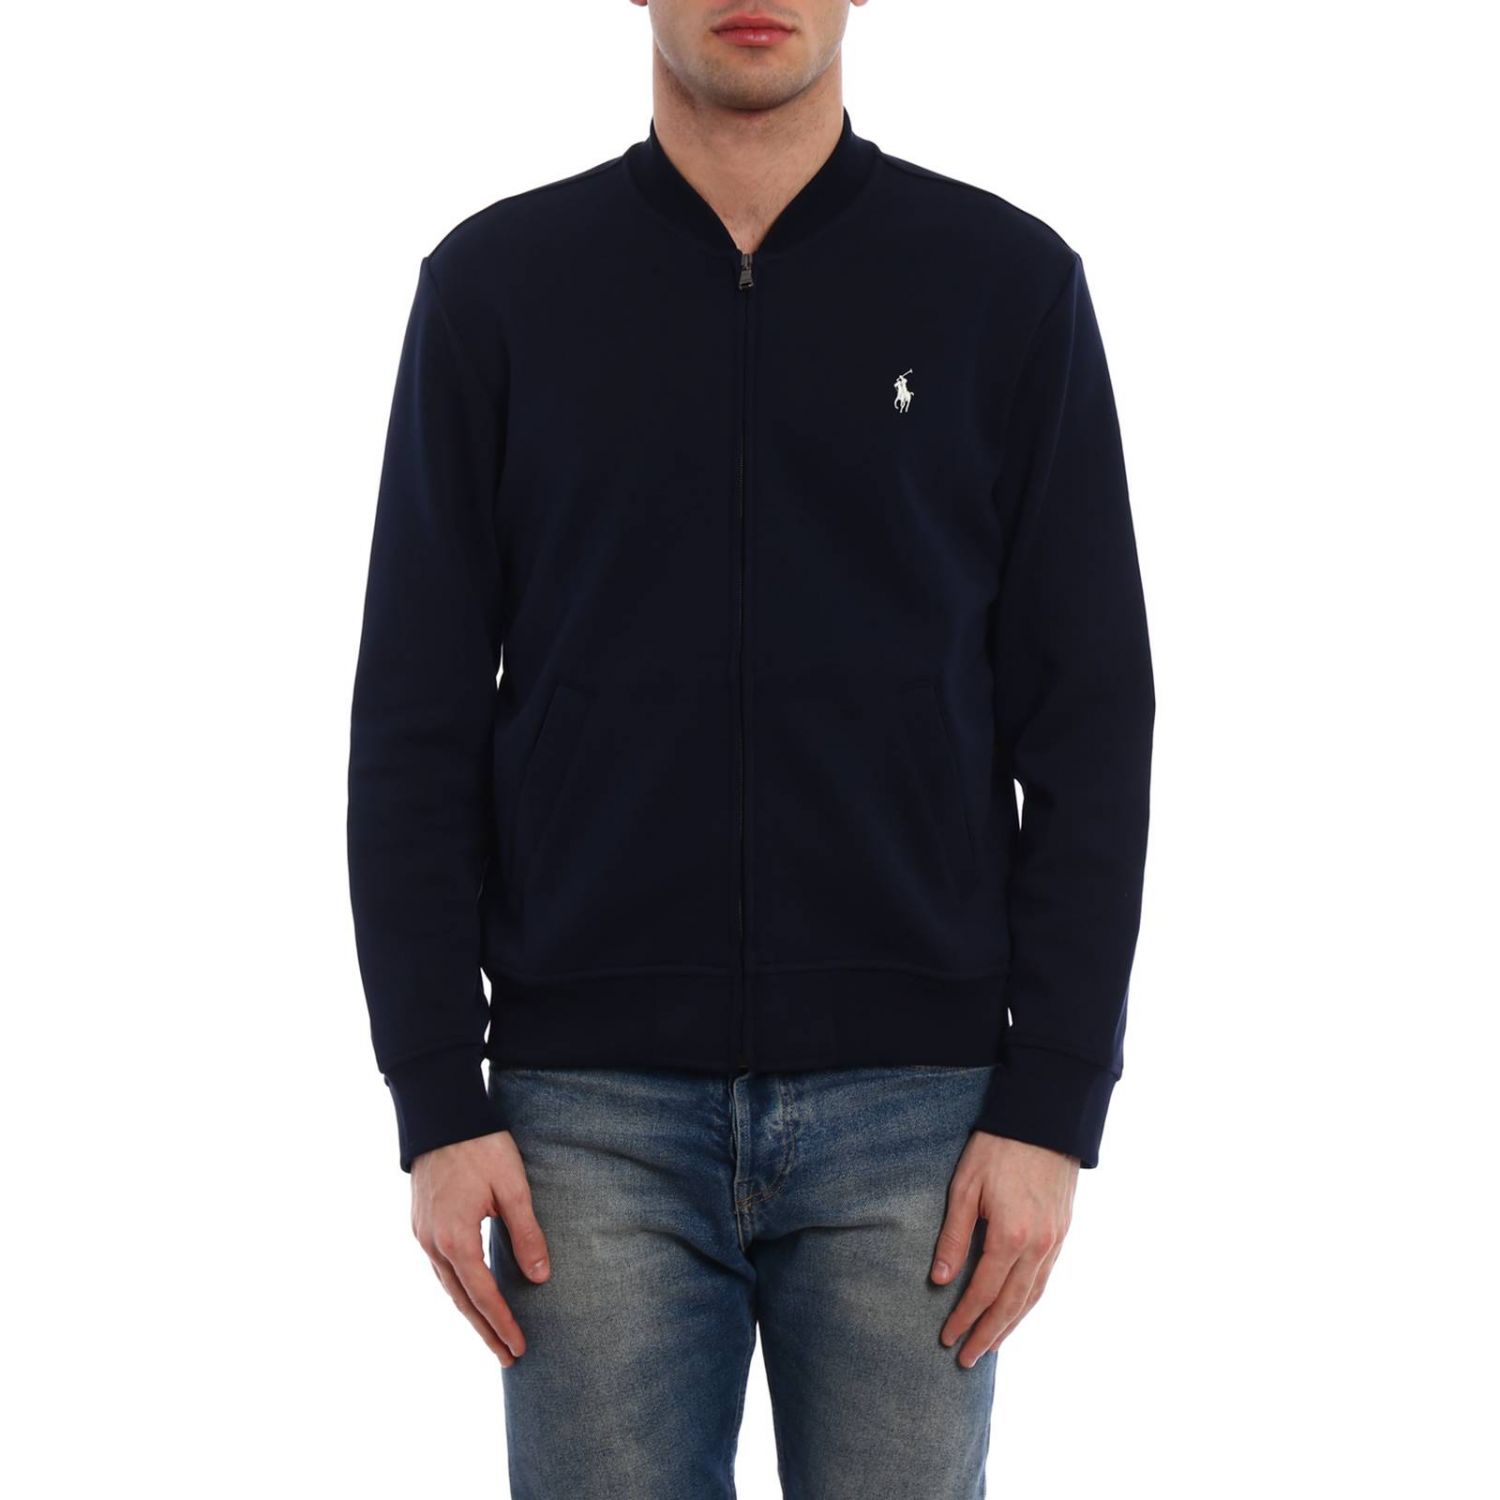 Polo Ralph Lauren Outlet: sweater for man - Navy | Polo Ralph Lauren ...